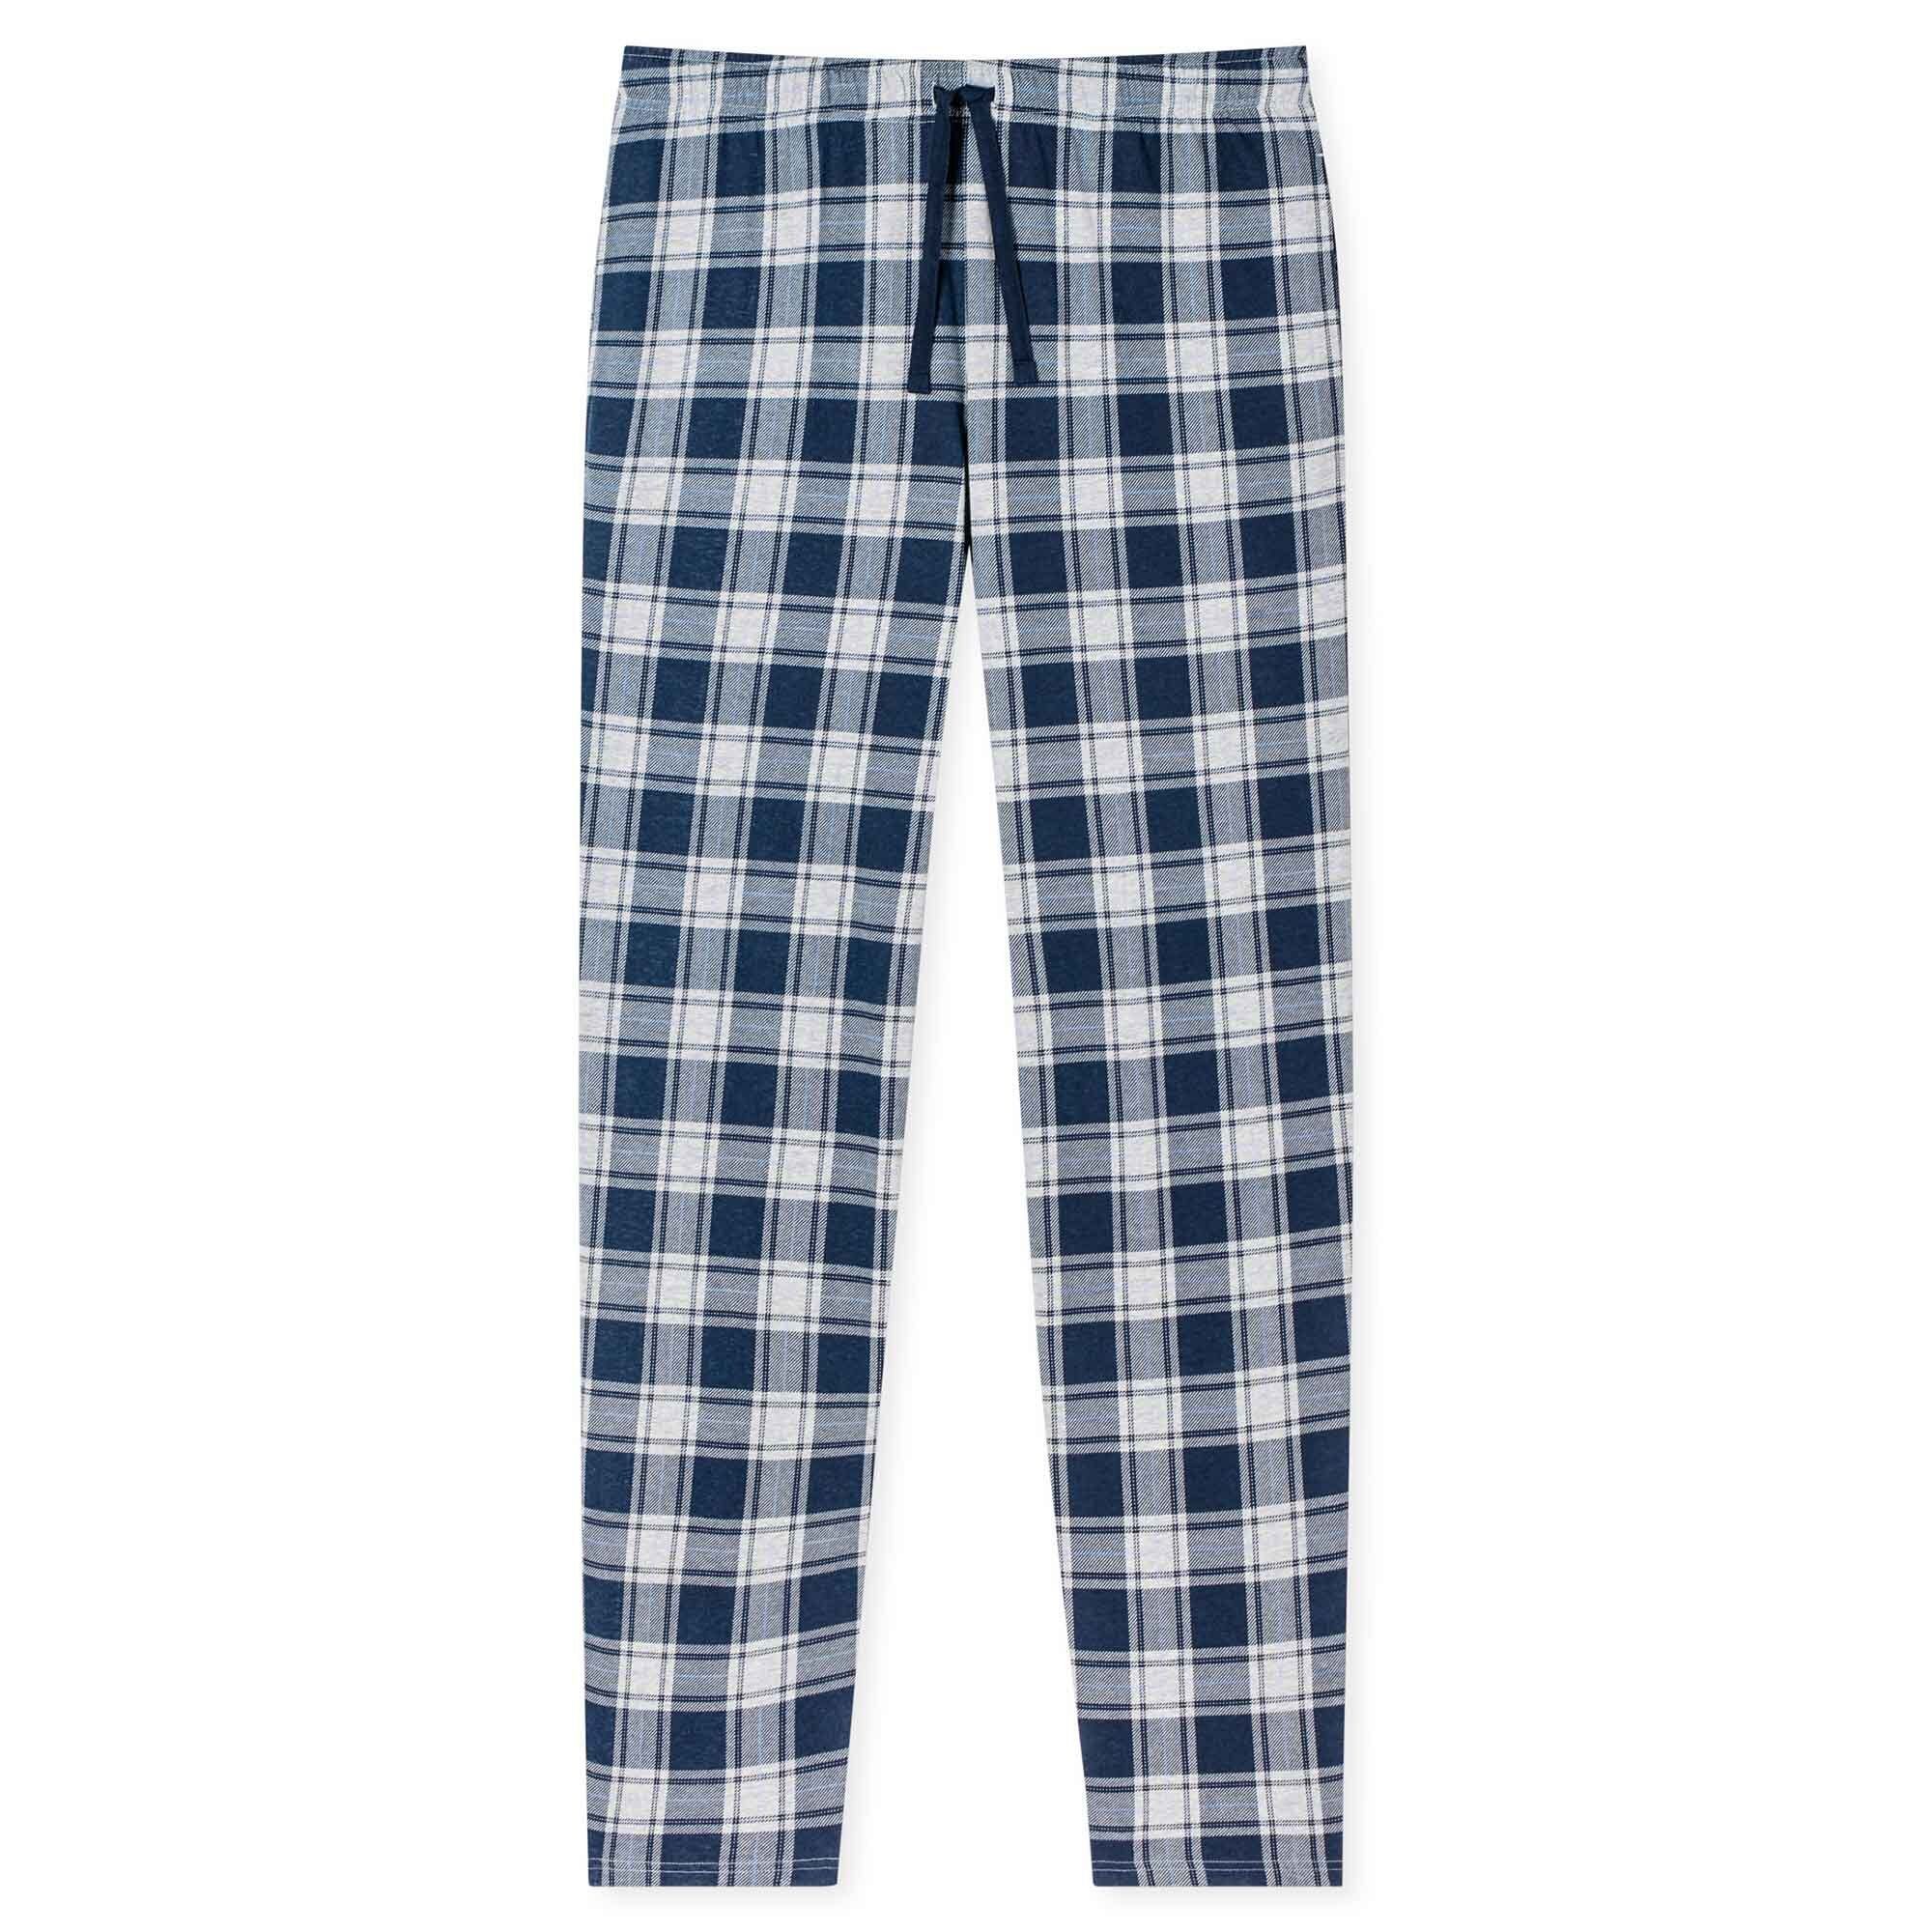 Baumwolle, kariert - Herren Schiesser Pyjama Web-Hose nachtblau Loungehose,